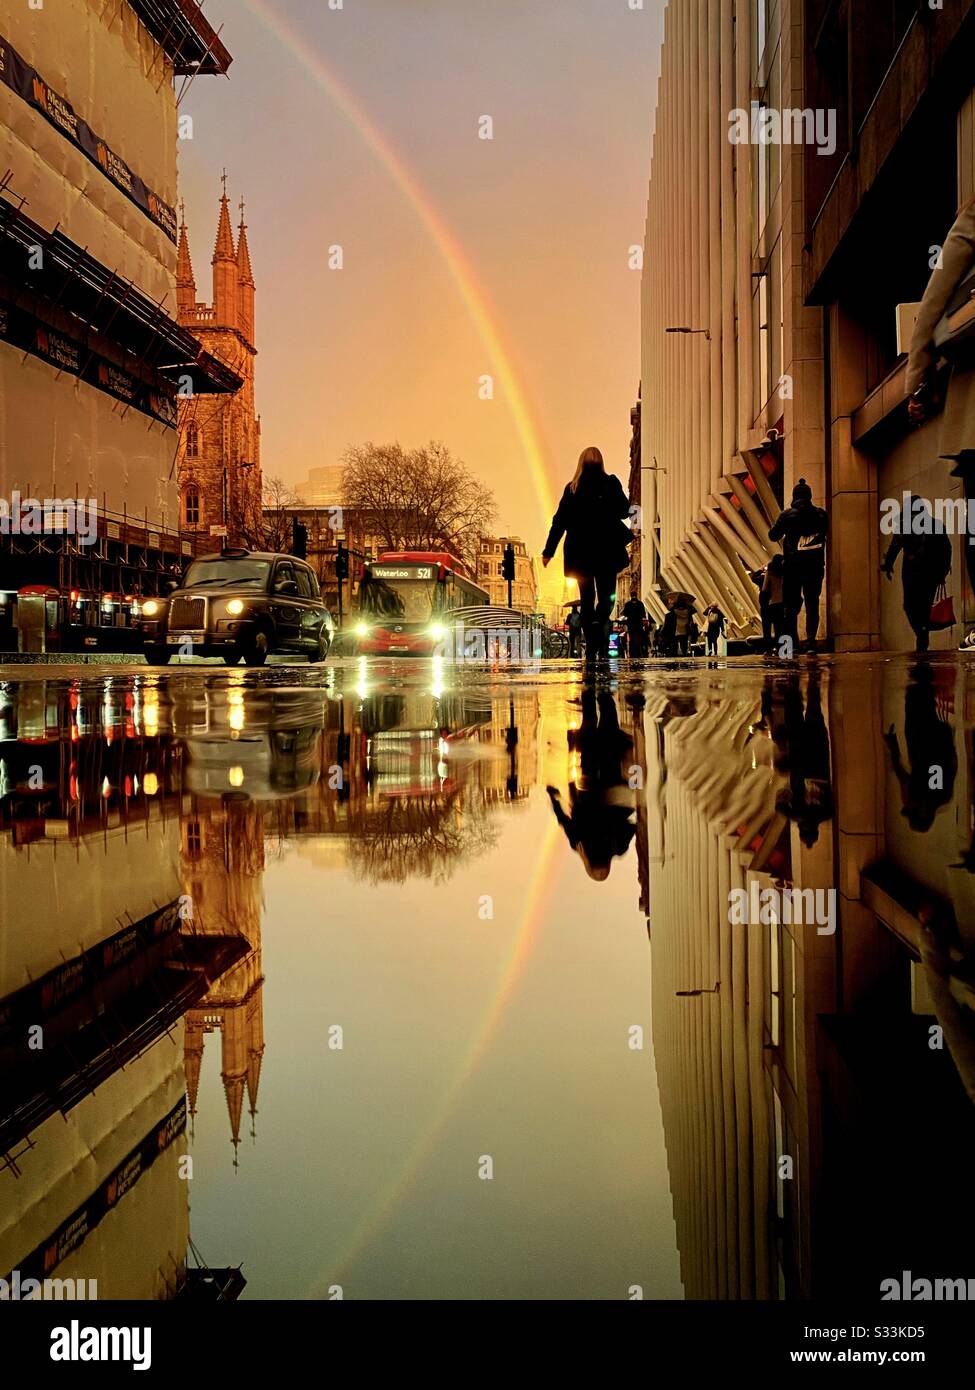 Wetter in Großbritannien: Ein Regenbogen scheint über das Walkie-Talkie-Gebäude, wie es sich auf einer verregneten Straße im Holborn Viaduct, London, England widerspiegelt. Stockfoto